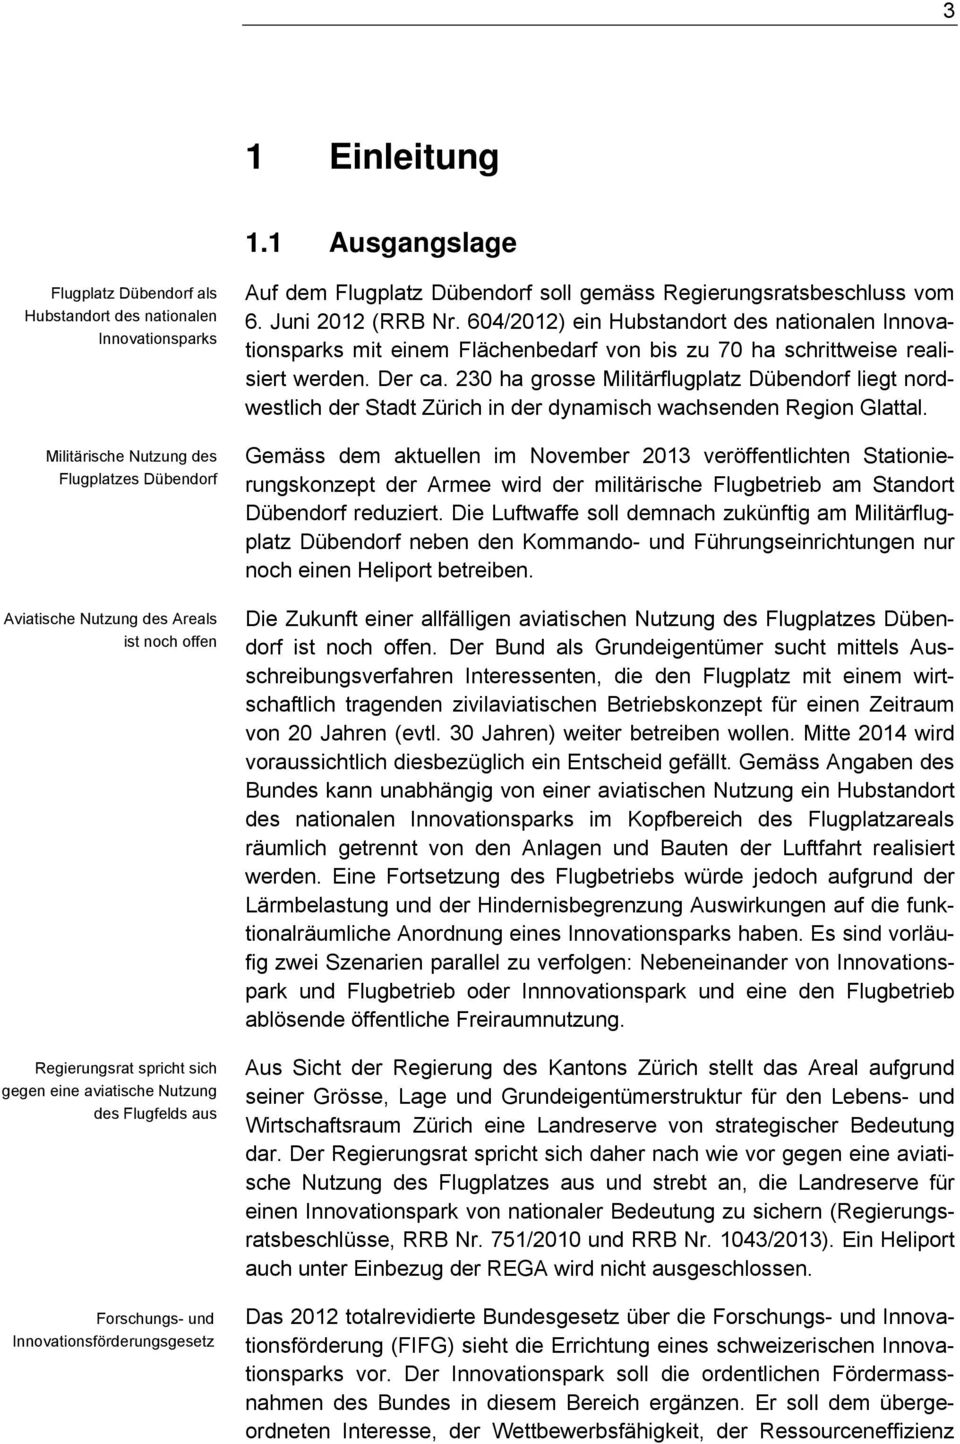 sich gegen eine aviatische Nutzung des Flugfelds aus Forschungs- und Innovationsförderungsgesetz Auf dem Flugplatz Dübendorf soll gemäss Regierungsratsbeschluss vom 6. Juni 2012 (RRB Nr.